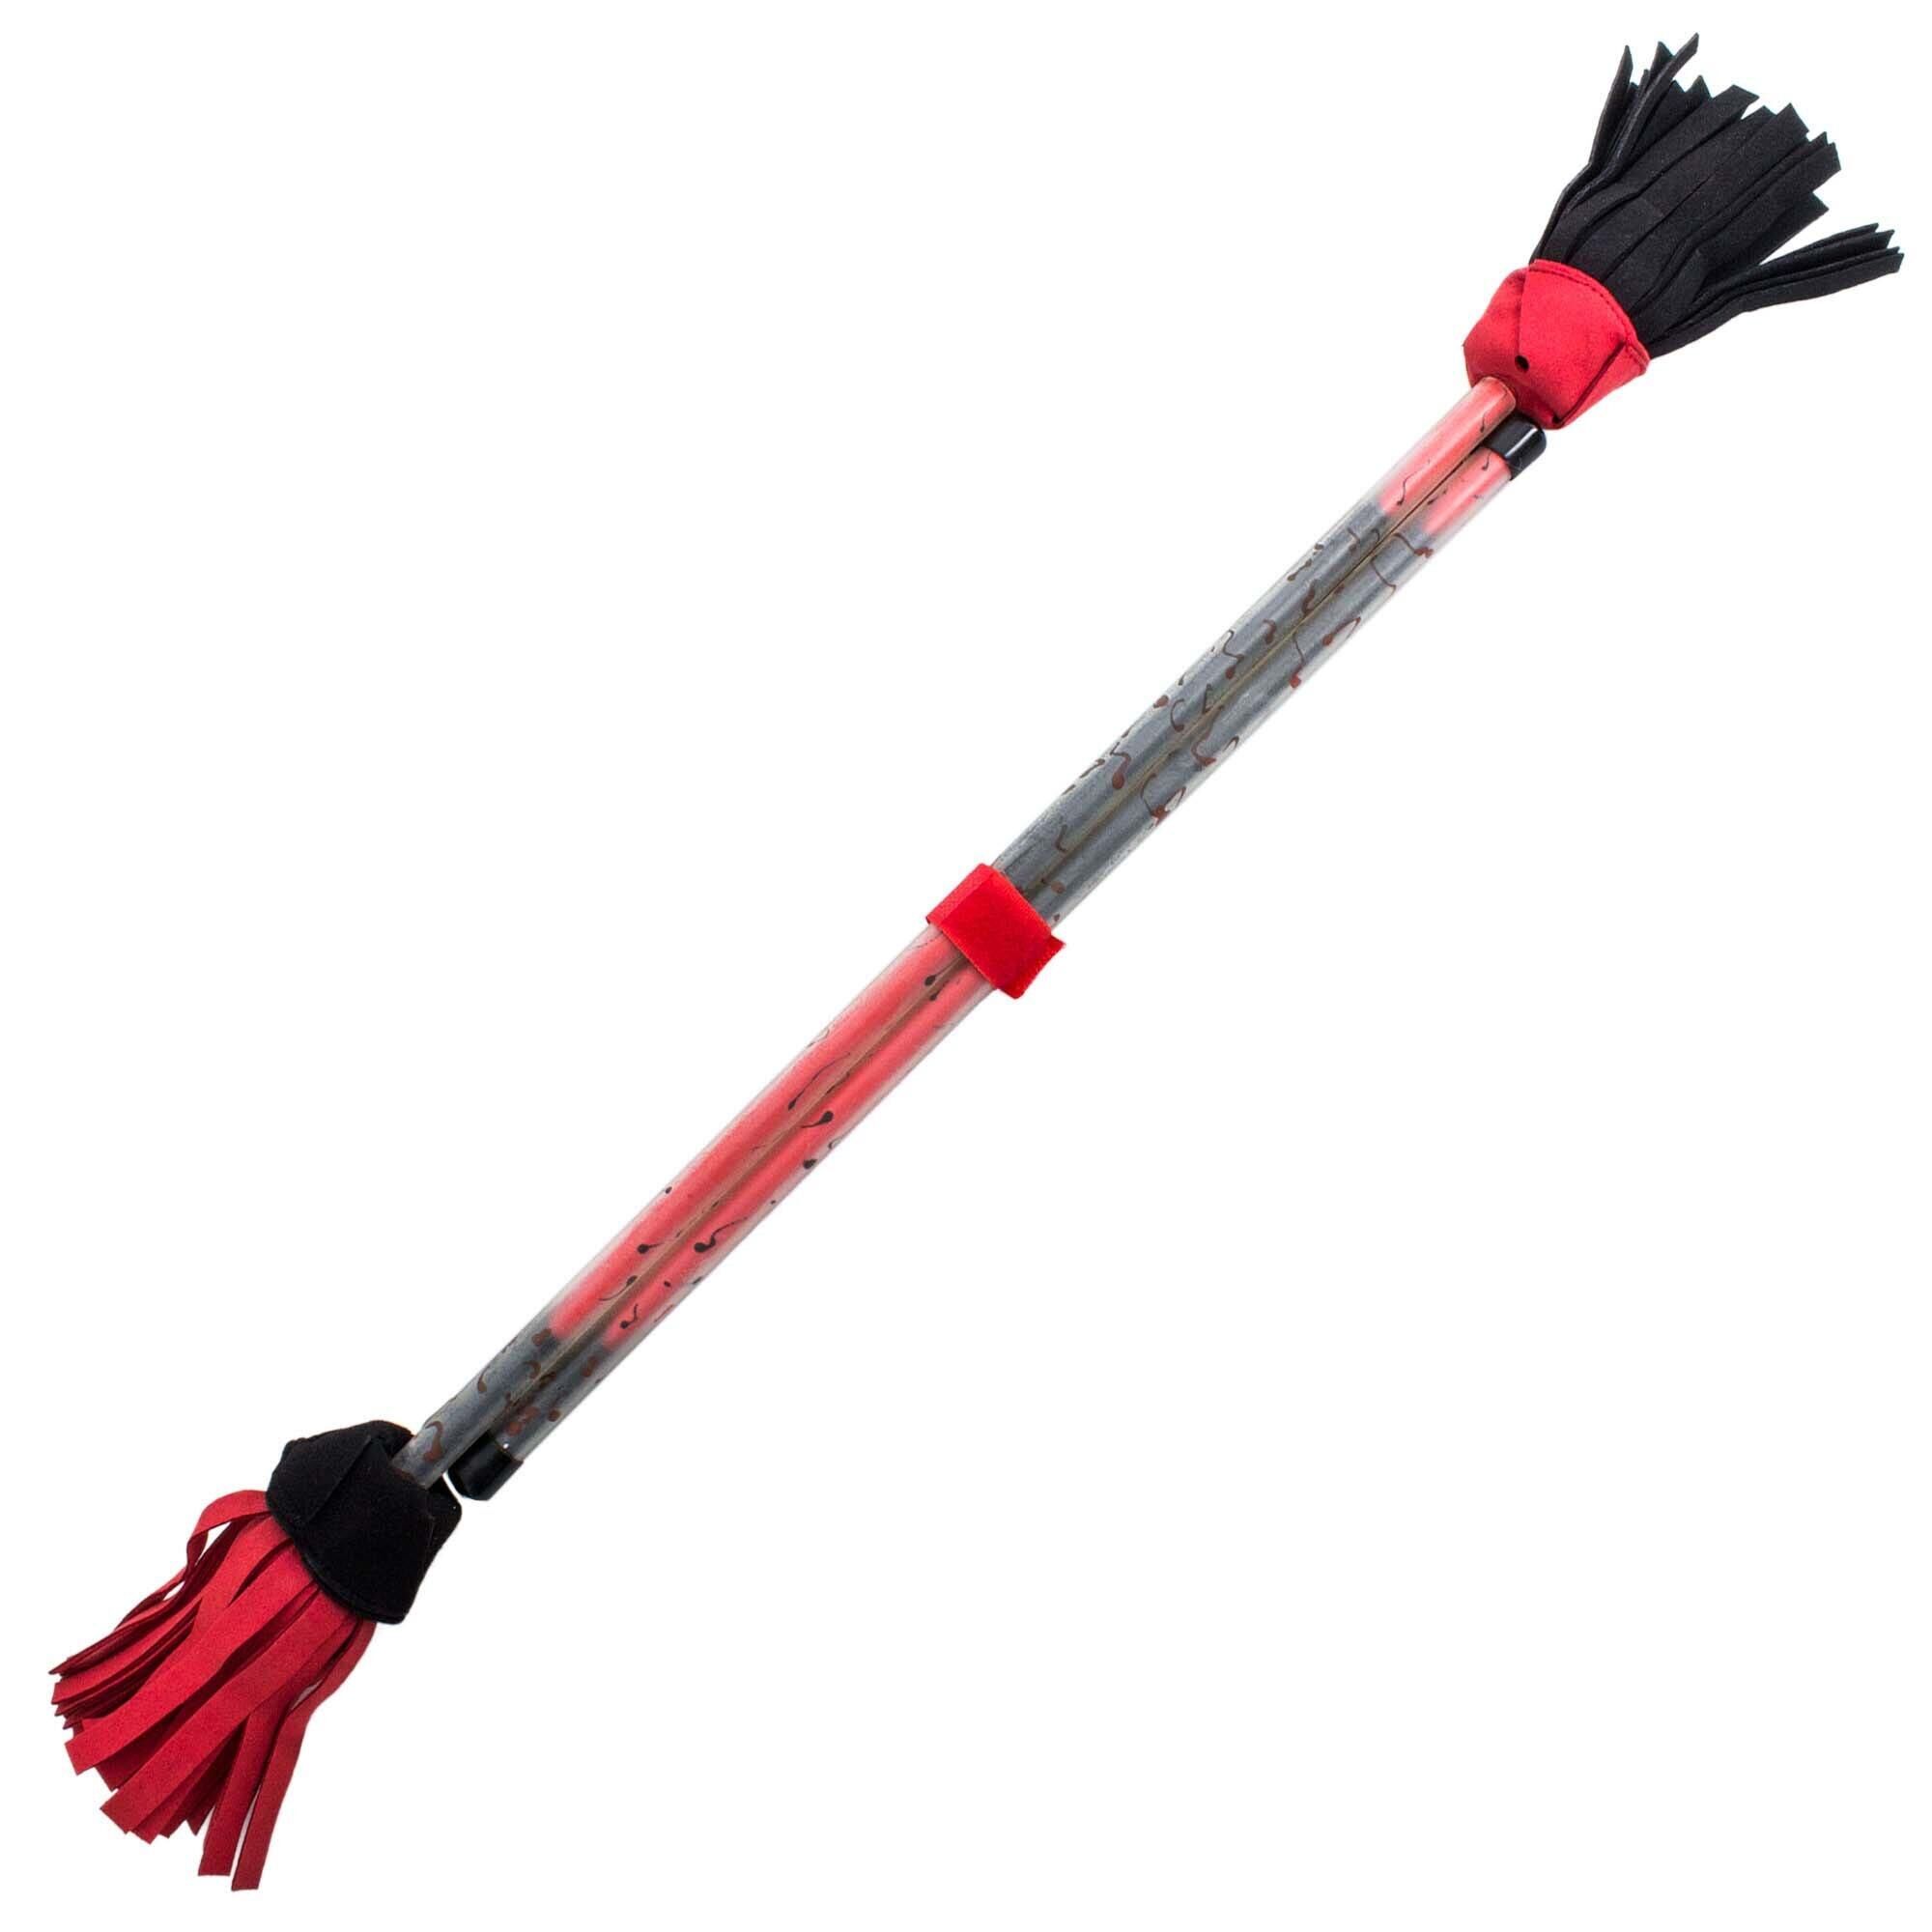 FIRETOYS Picasso Flower Stick and Hand Sticks-Black/Red